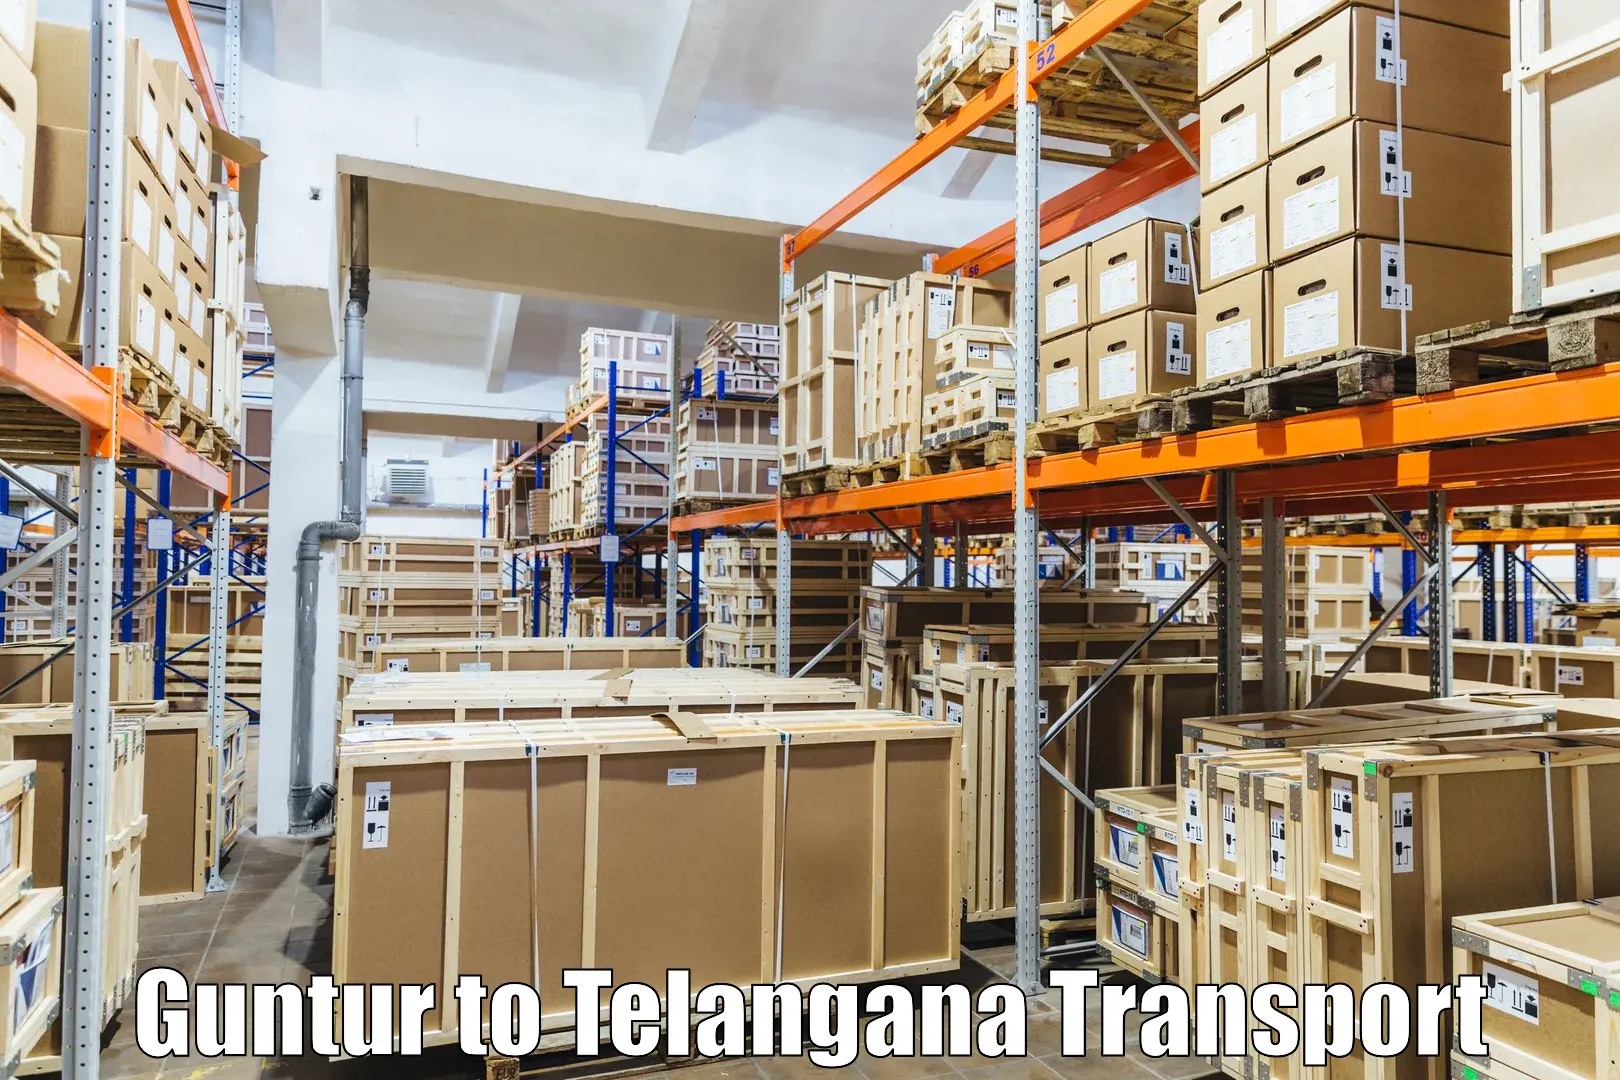 Shipping partner Guntur to Thirumalagiri